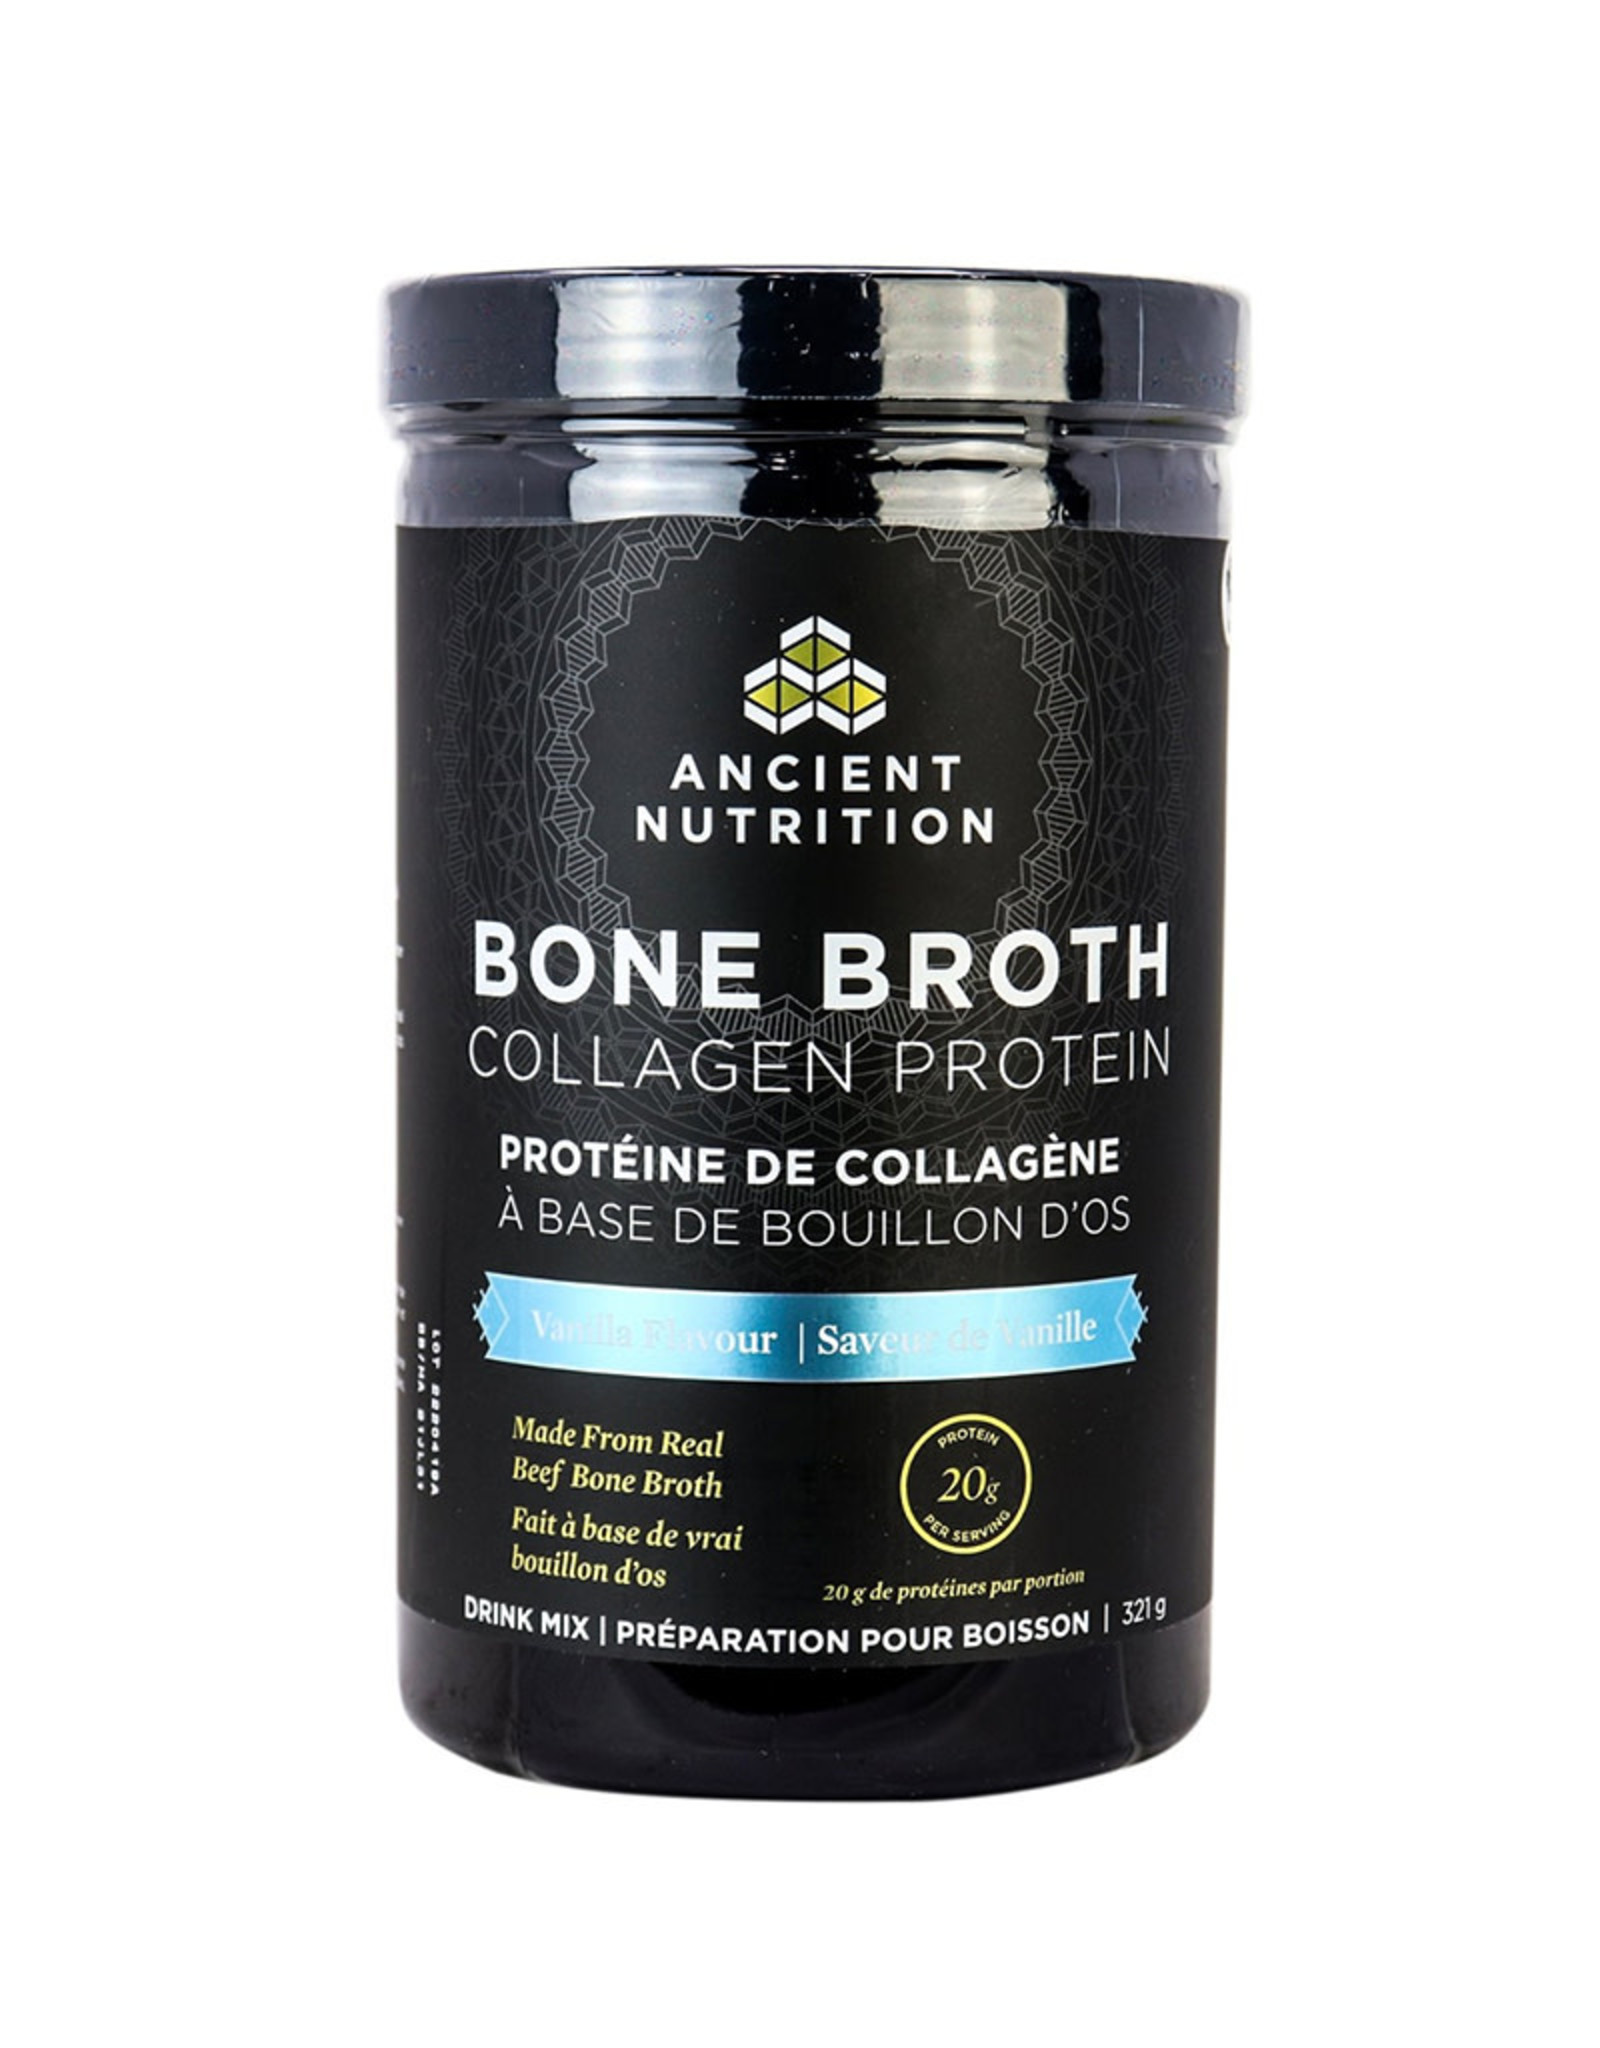 Ancient Nutrition Ancient Nutrition - Bone Broth Collagen Protein, Vanilla (321g)